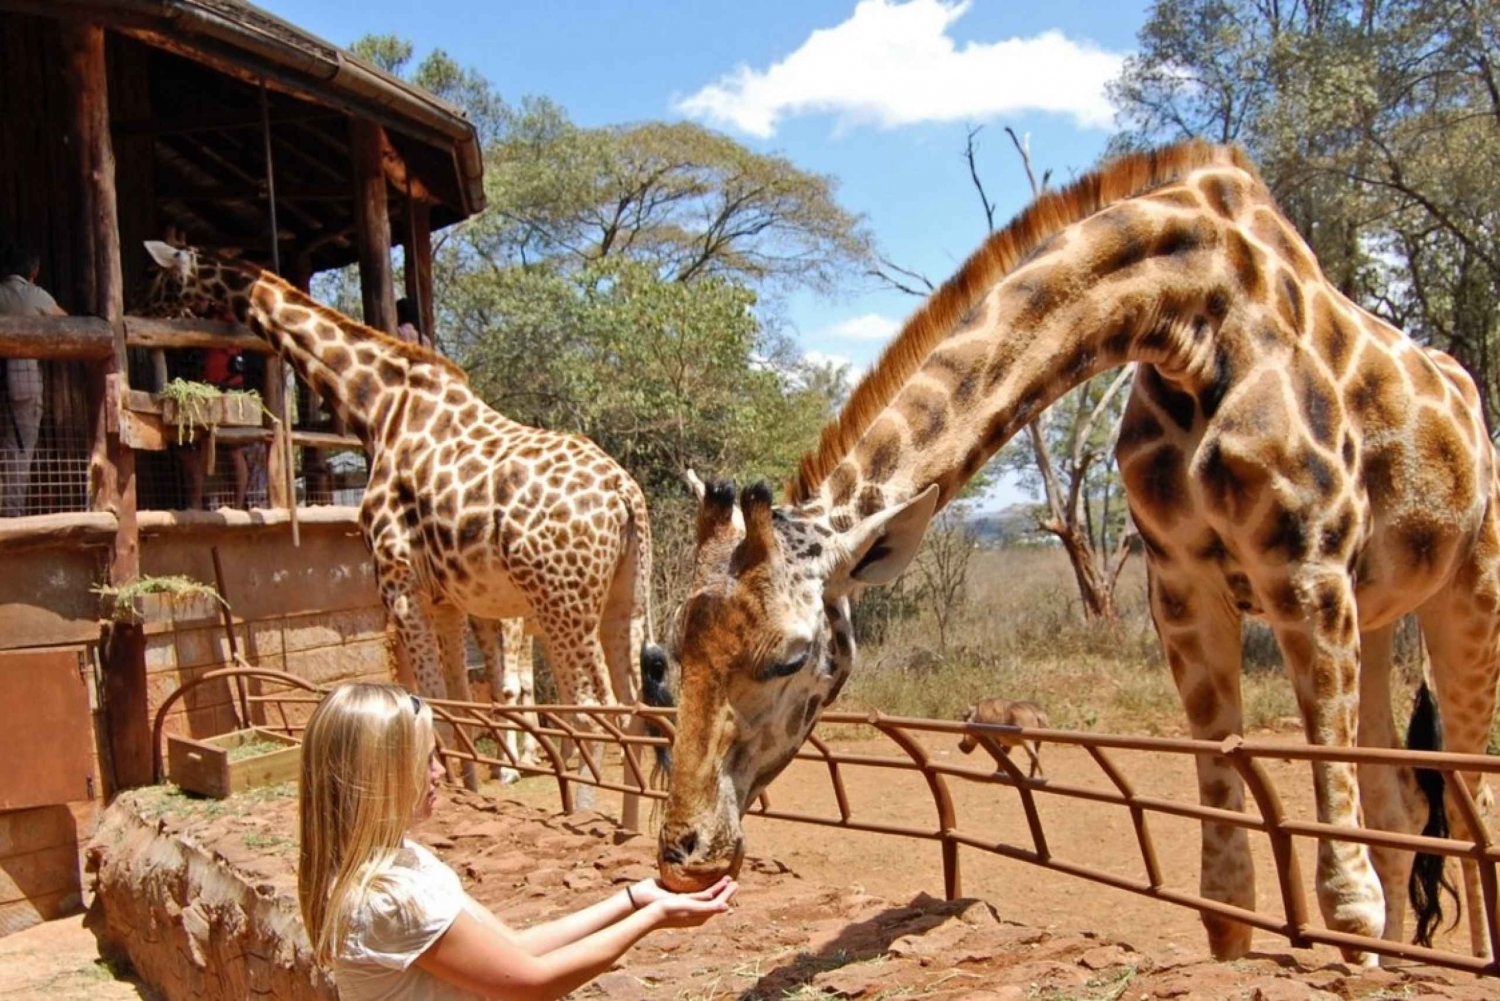 Nairobi Day Trip: Giraffes, Elephants and Karen Blixen